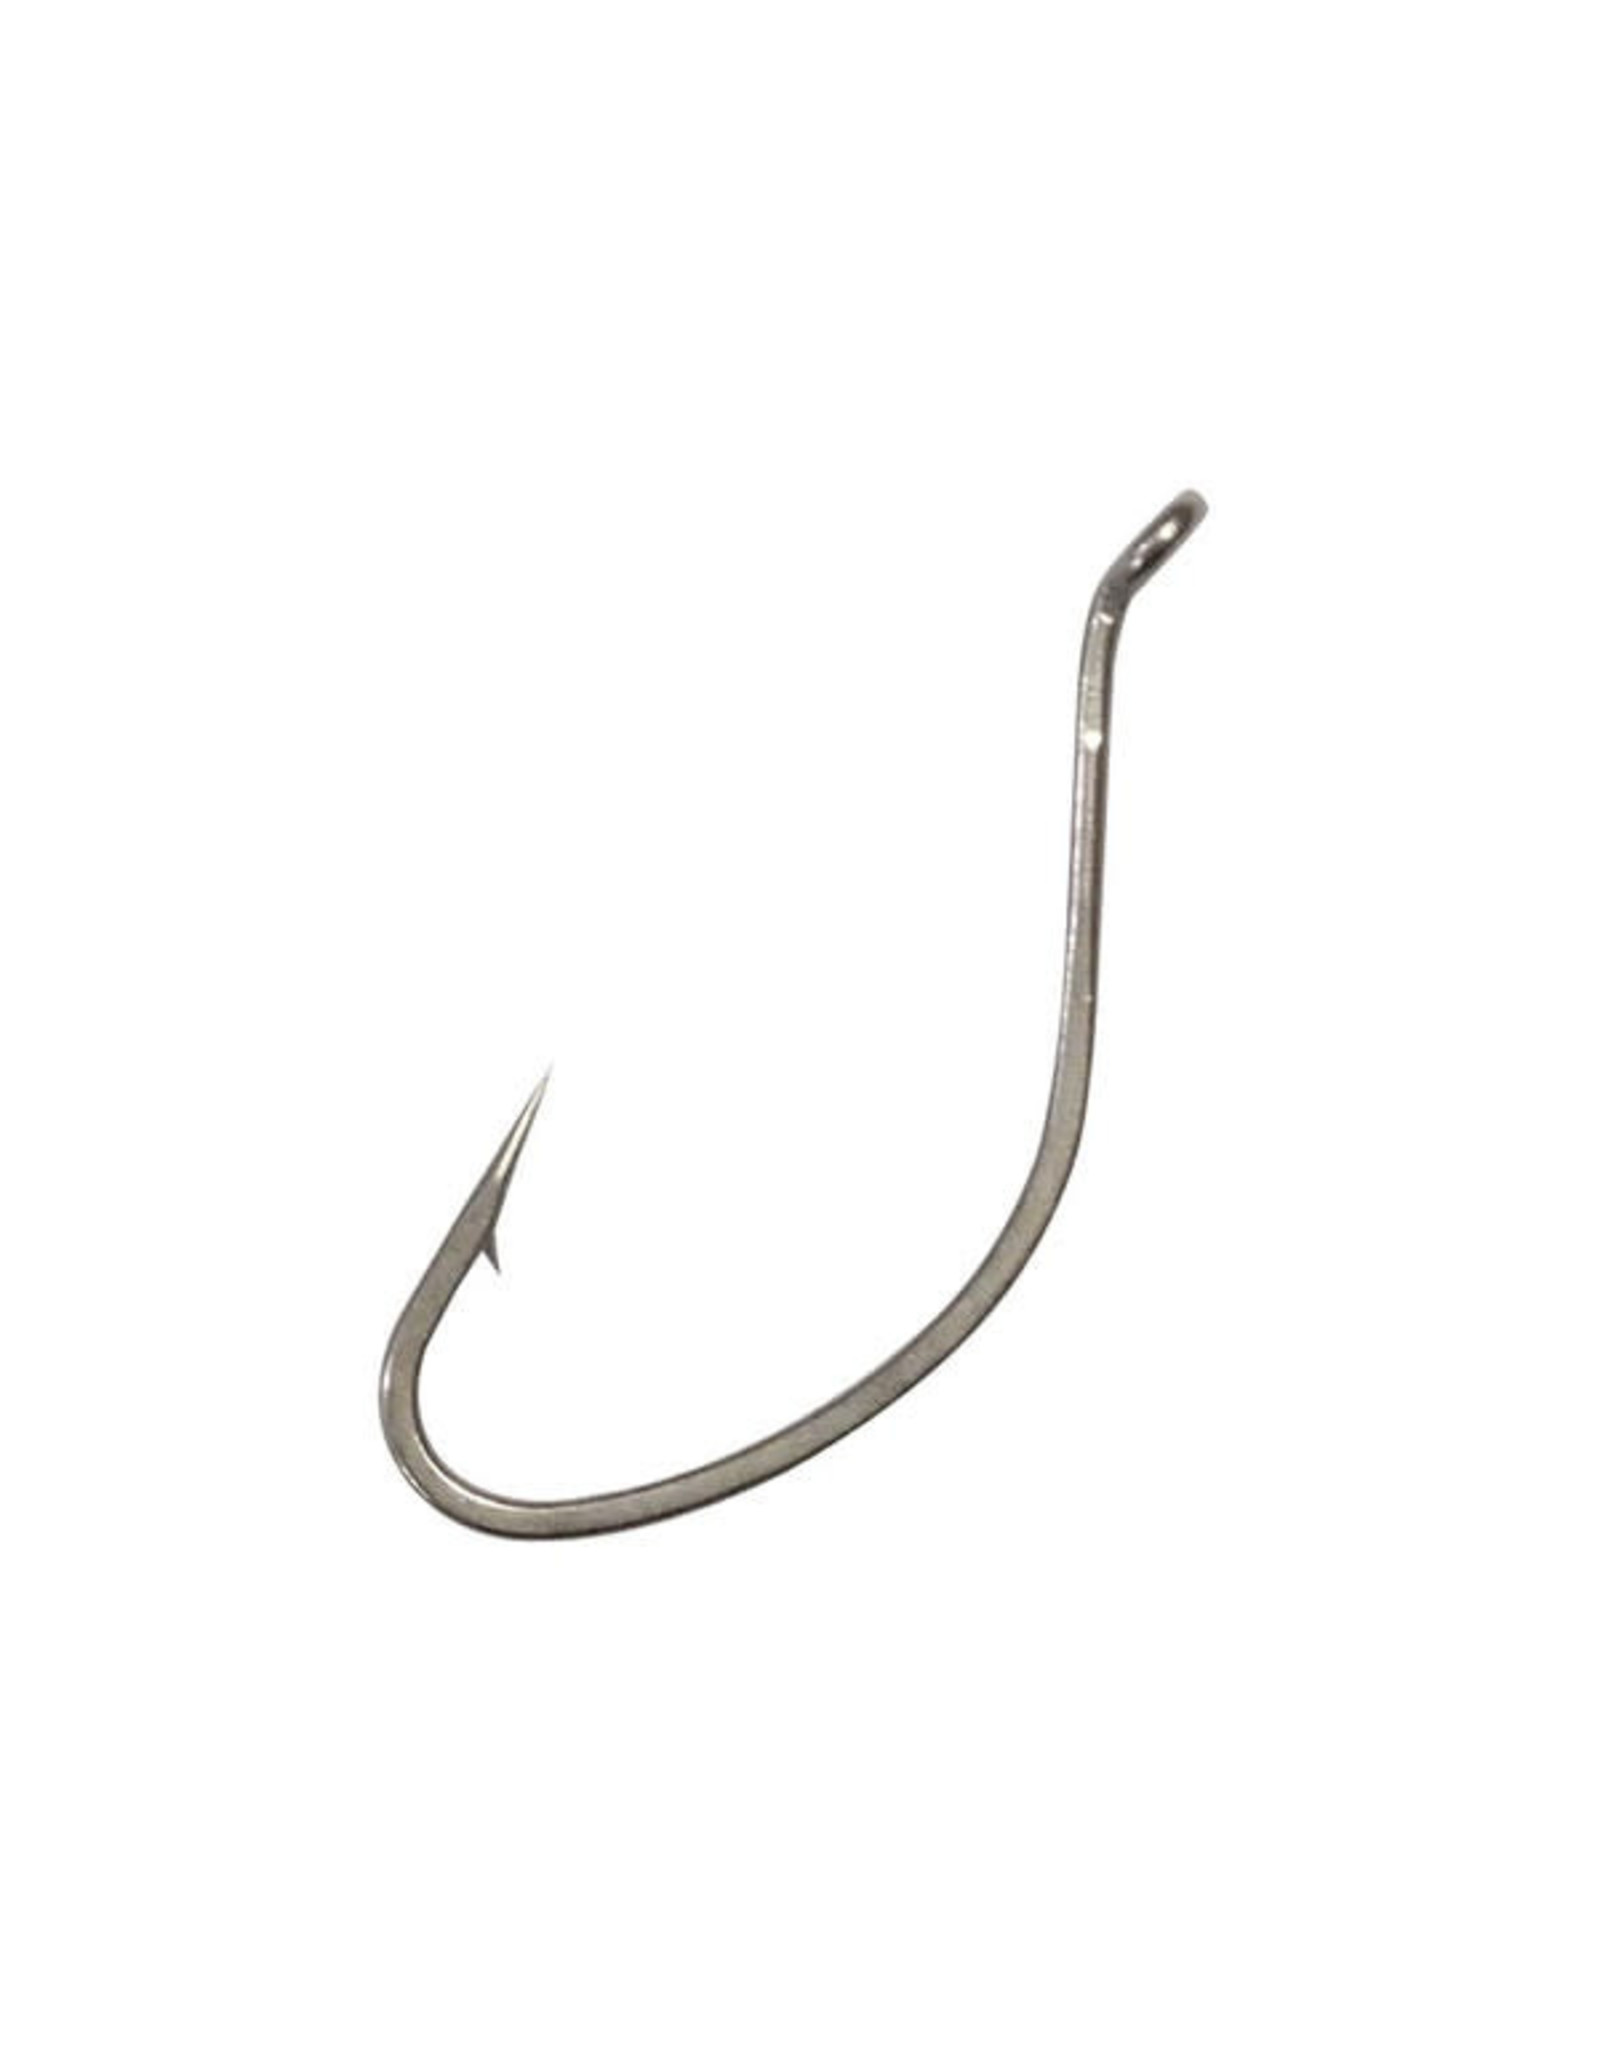 Gamakatsu 262107 Trout Worm Hook Size 6, Needle Point, Ringed Eye